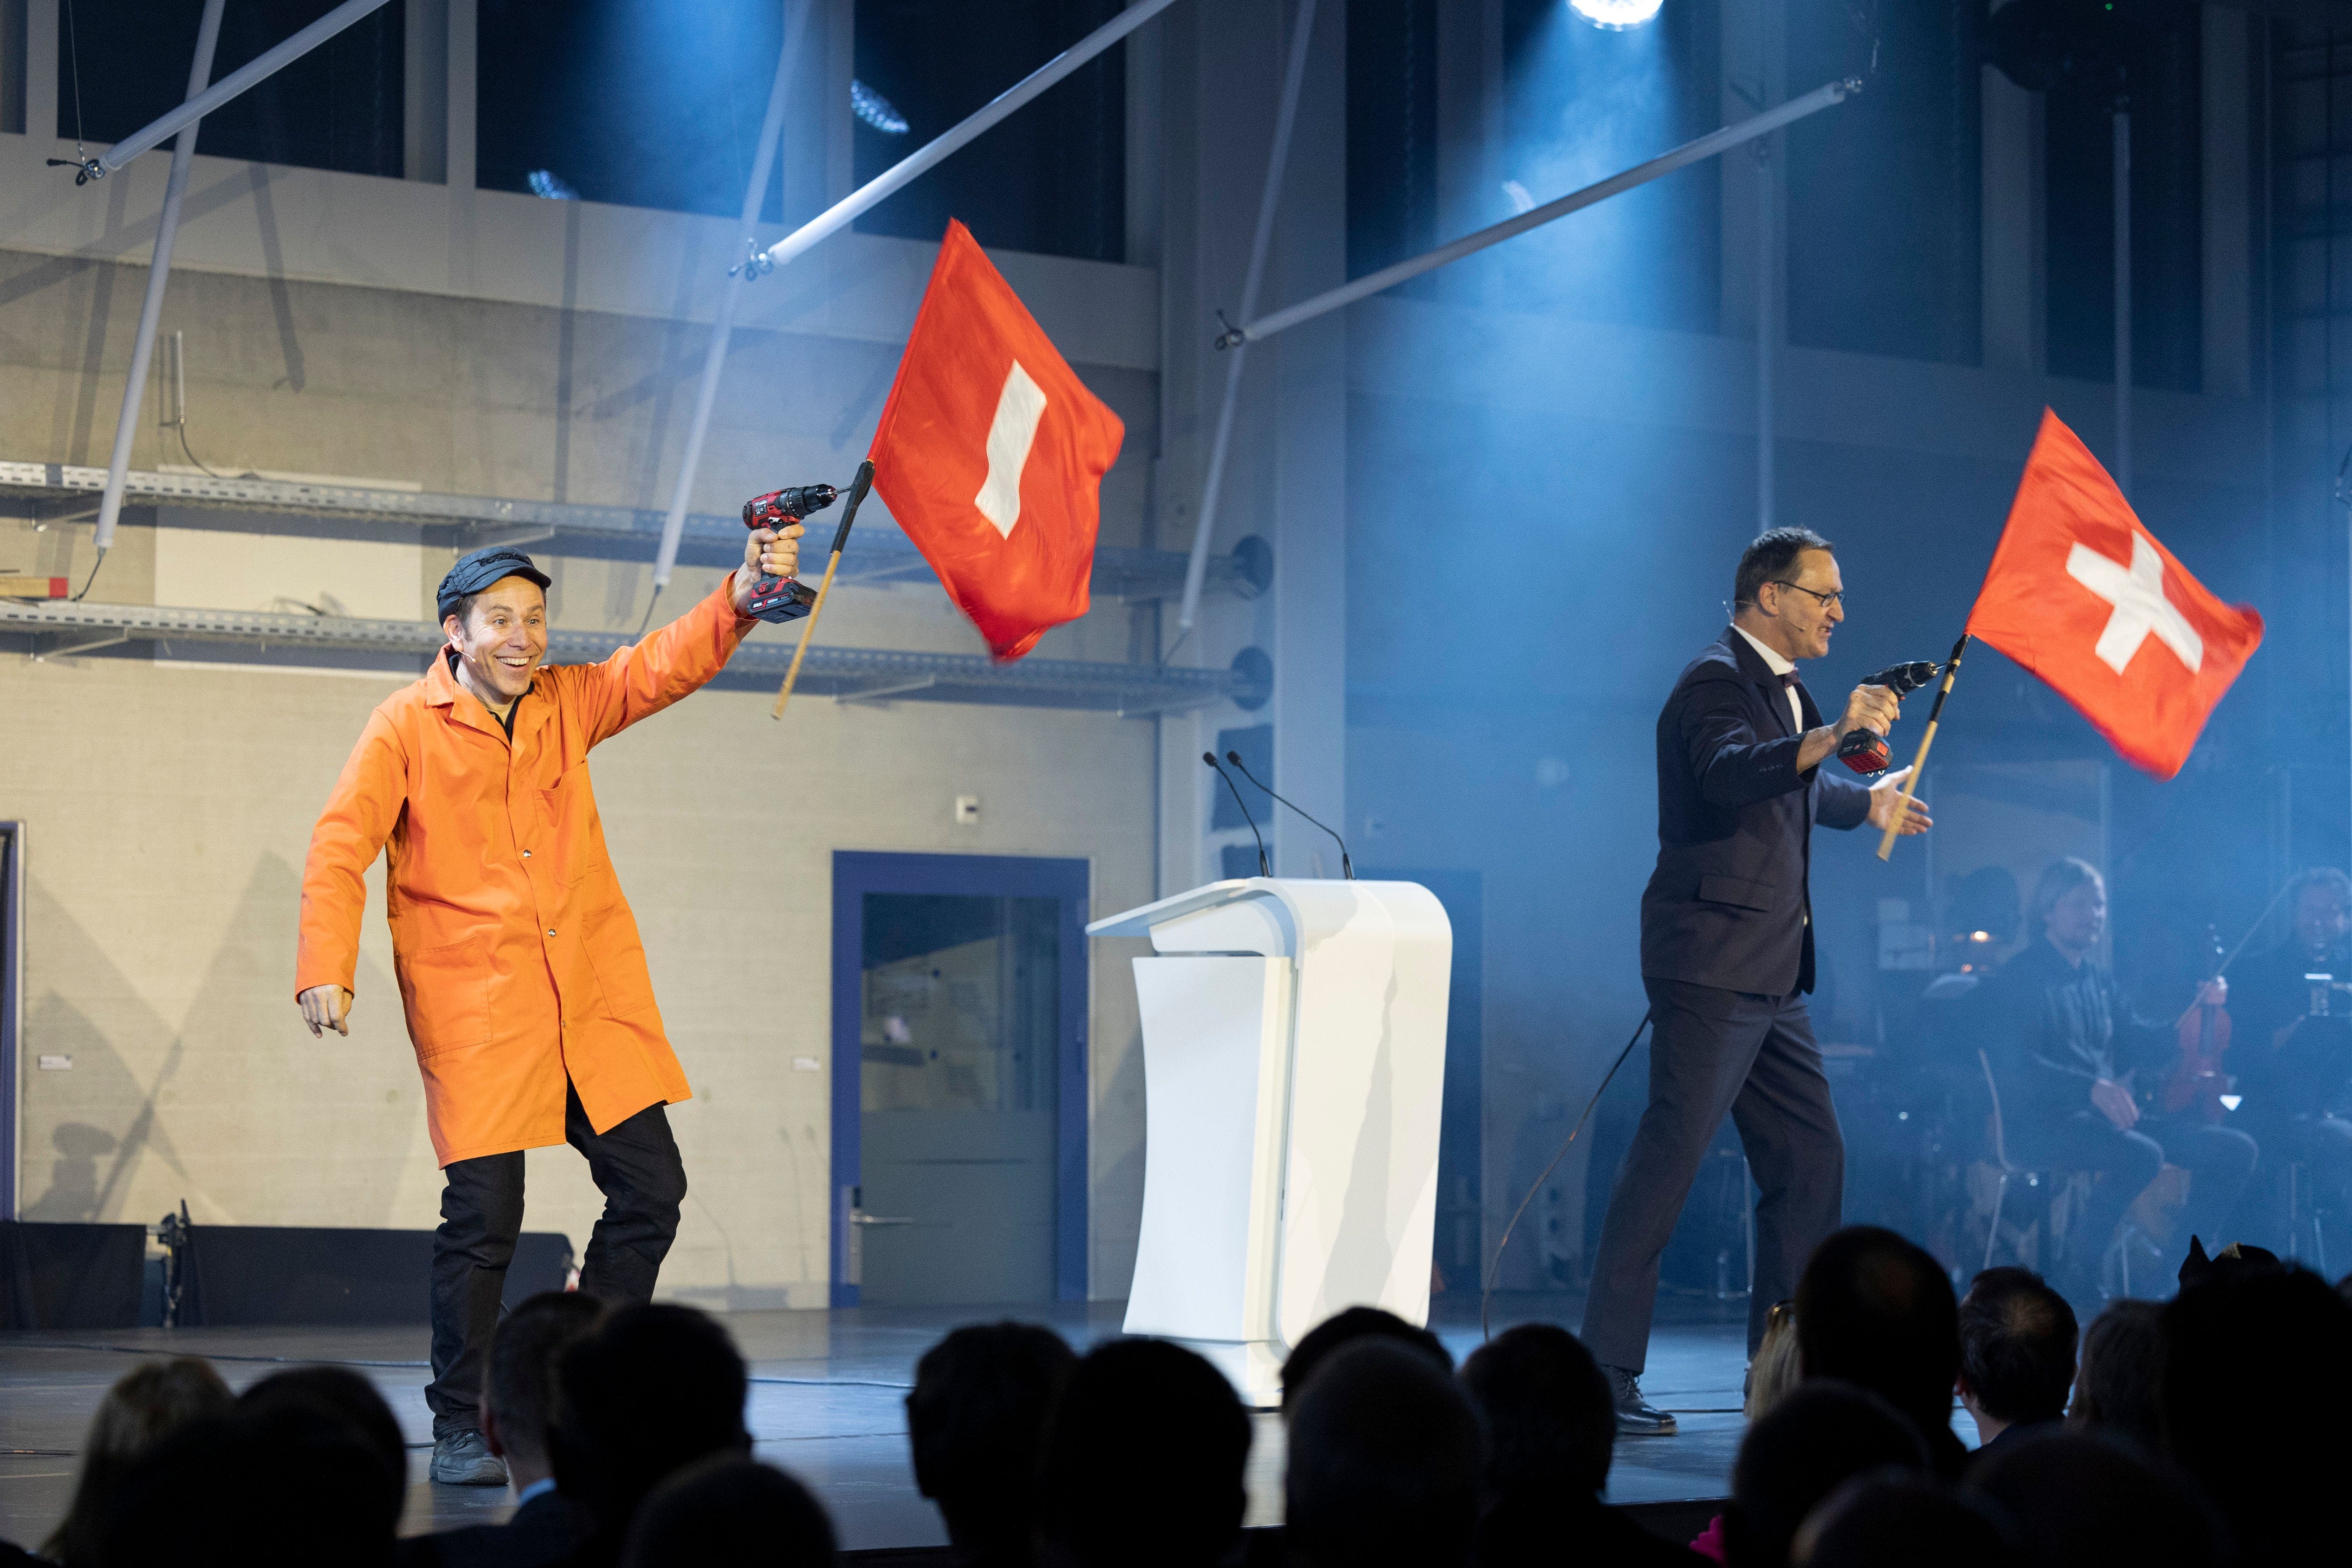 Das Komikerduo Lapsus aus Dietikon, bestehend aus Christian Höhener alias Bruno Gschwind (links) und Peter Winkler-Payot alias Theo Hitzig, moderierte die Eröffnungsshow.